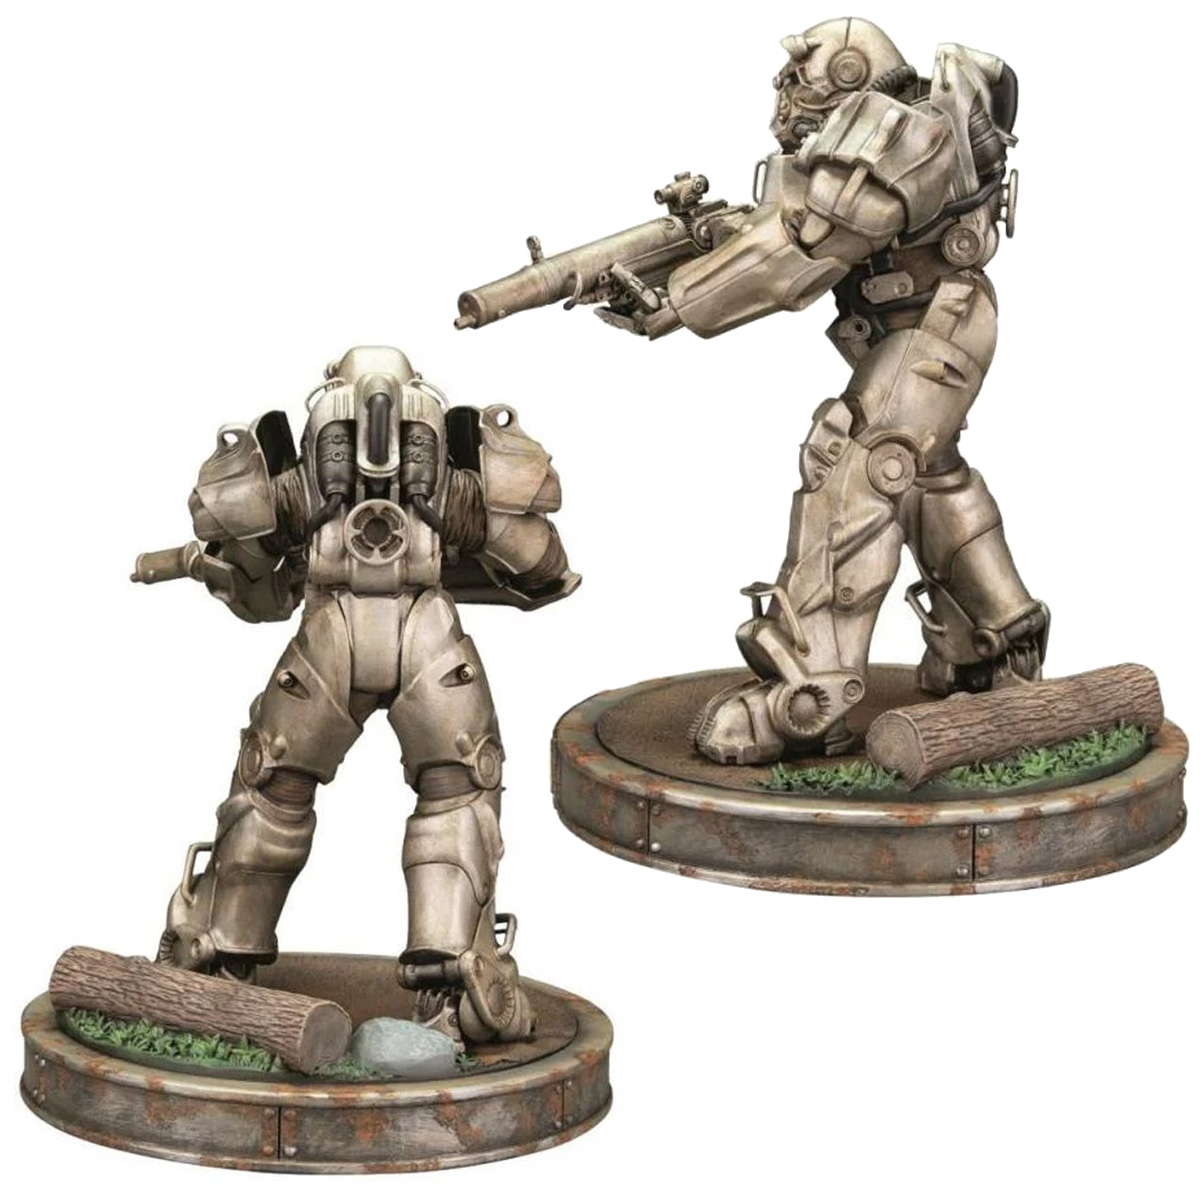 Estátuas da Série Fallout Amazon Prime